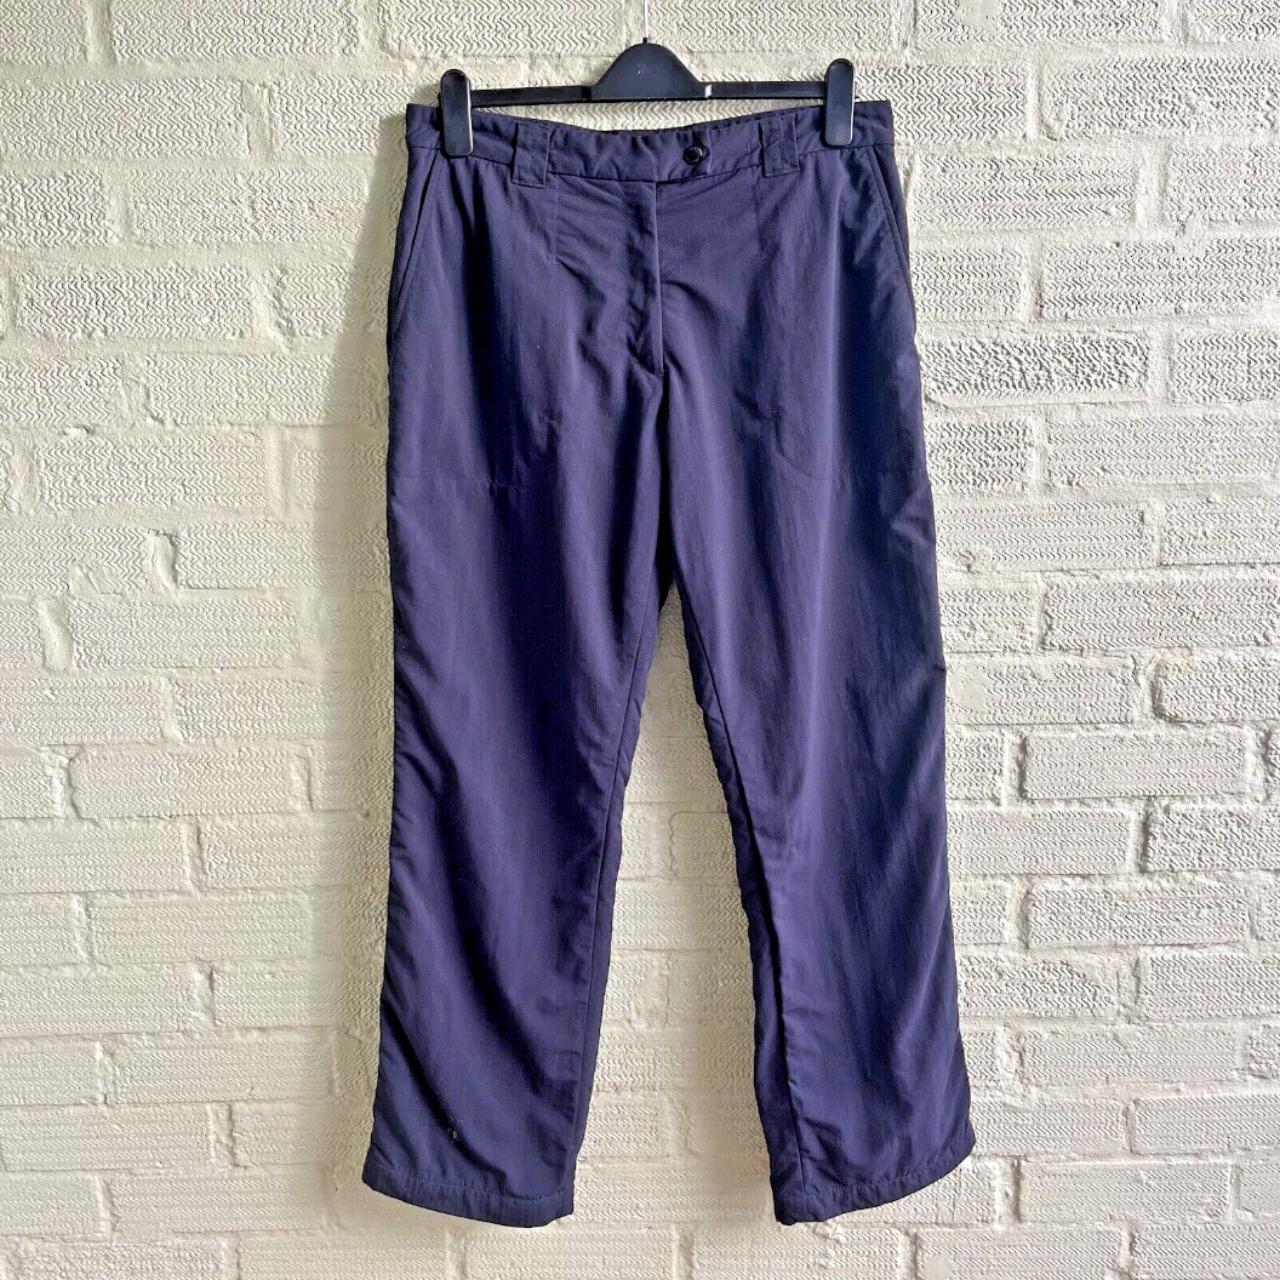 Rohan Ladies Trailblazers Trousers Size 12 | eBay